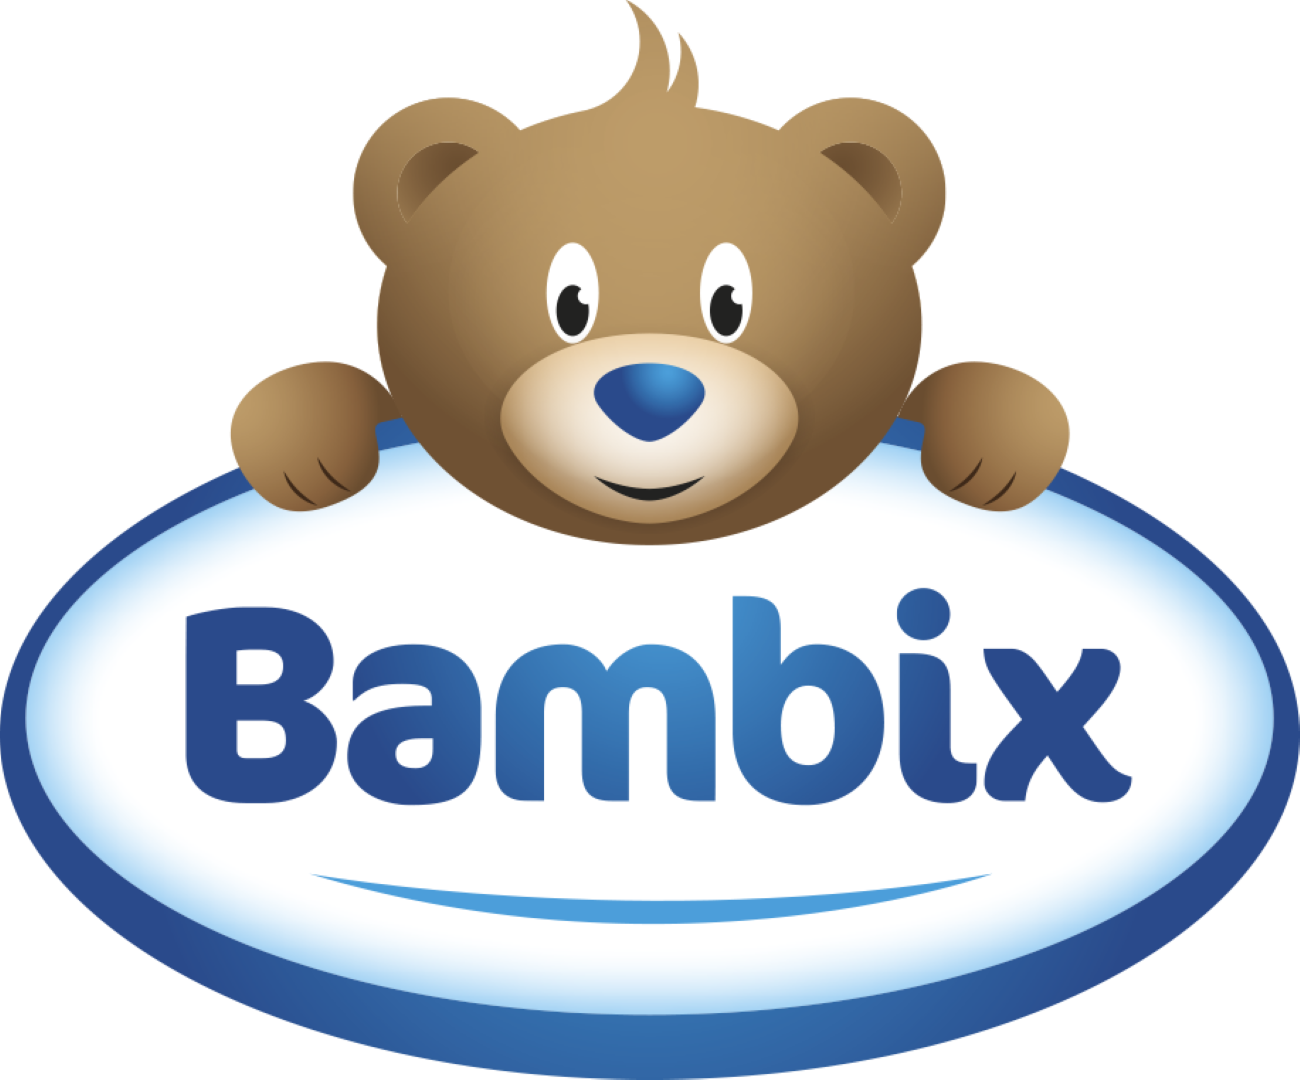 Bambix